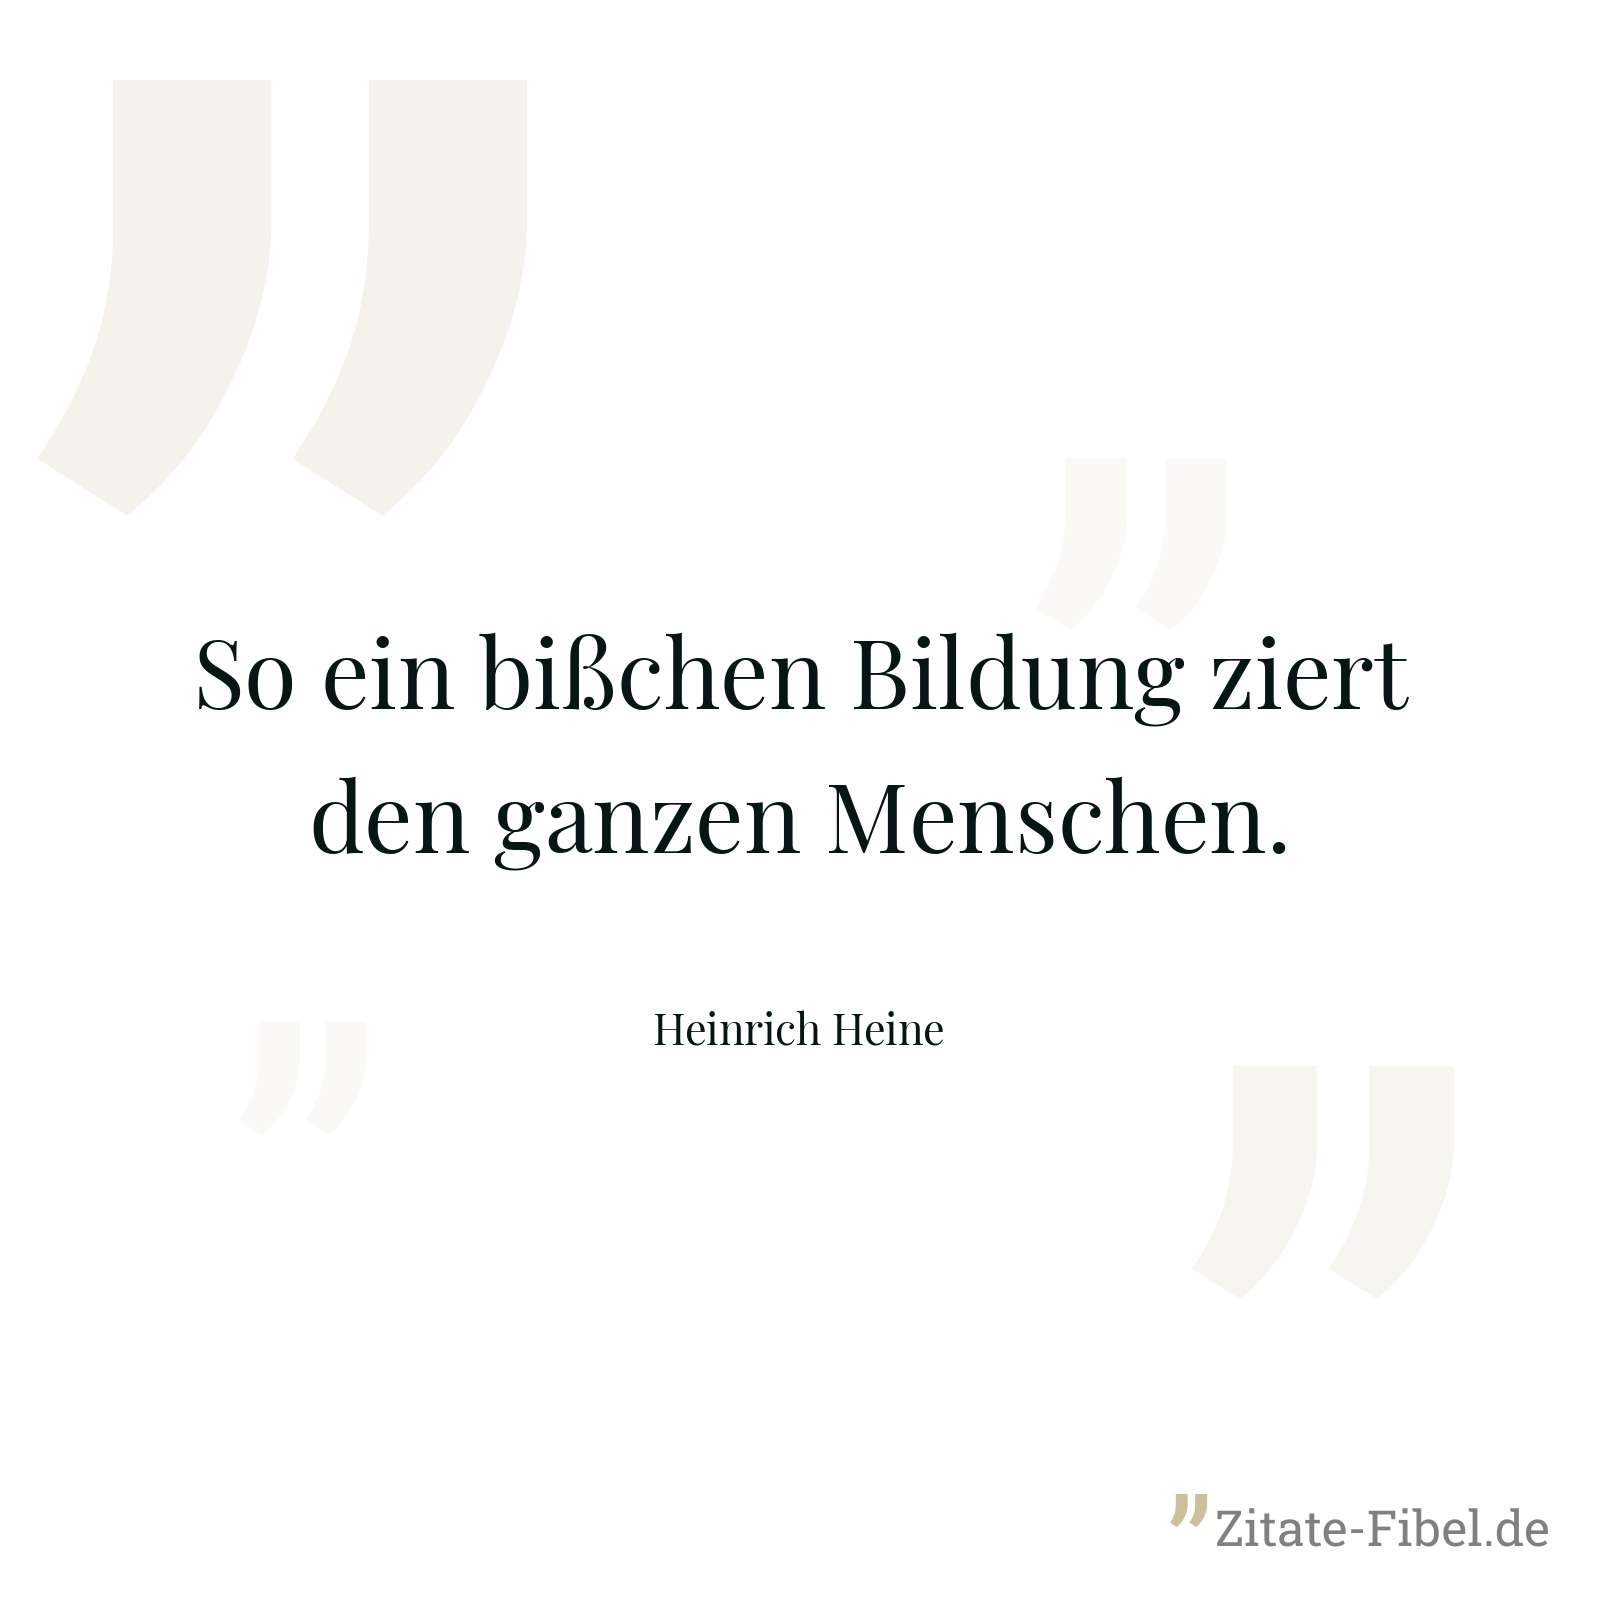 So ein bißchen Bildung ziert den ganzen Menschen. - Heinrich Heine